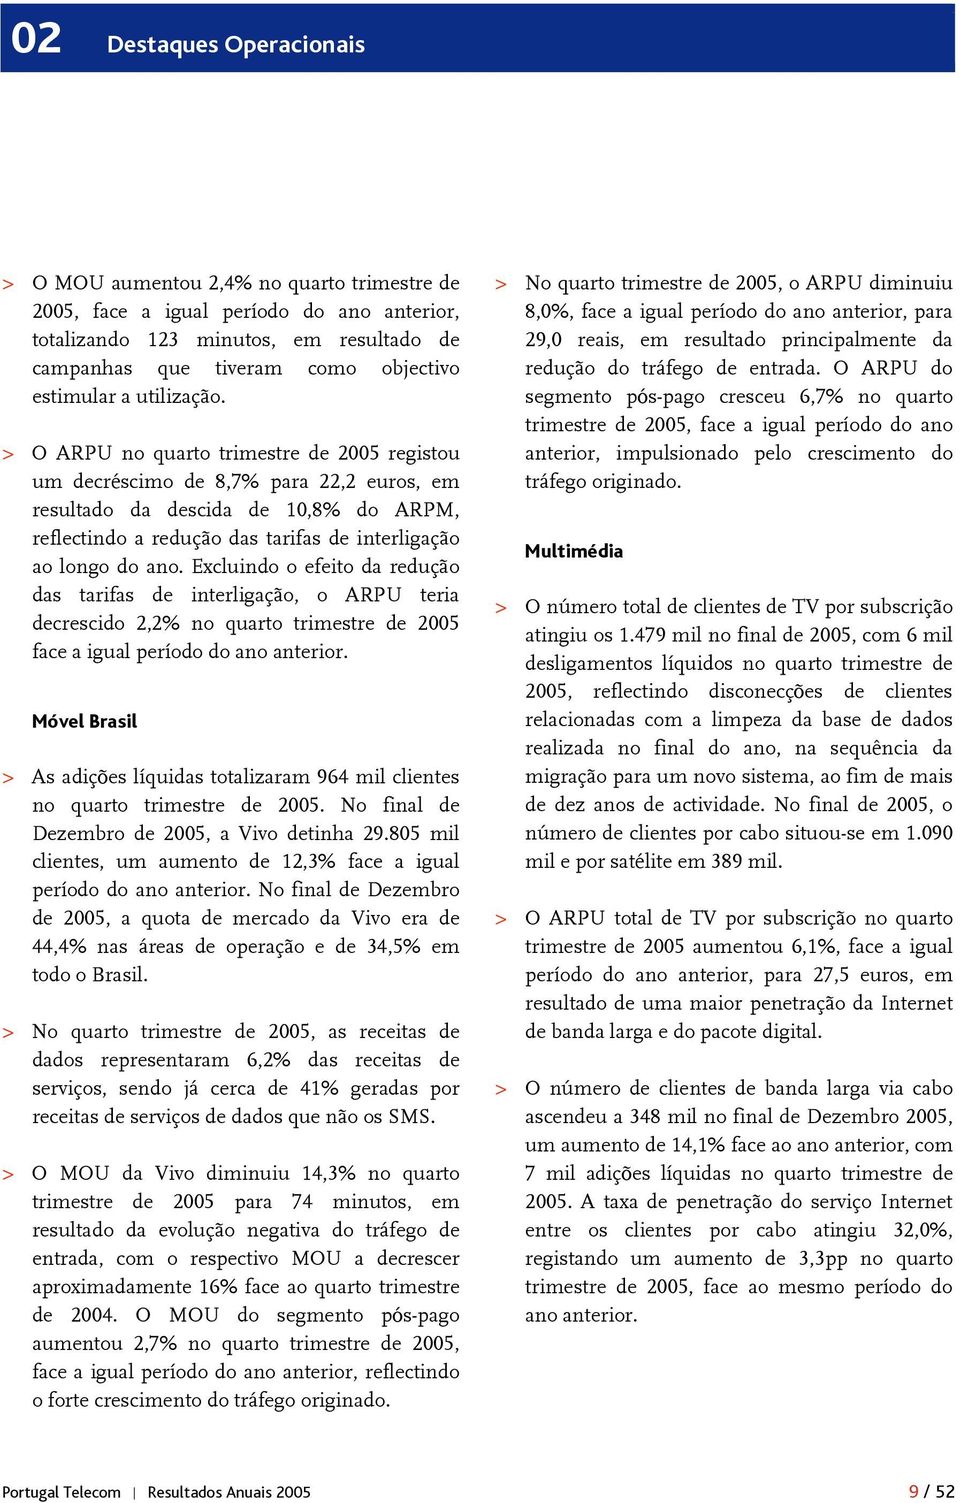 > O ARPU no quarto trimestre de 2005 registou um decréscimo de 8,7% para 22,2 euros, em resultado da descida de 10,8% do ARPM, reflectindo a redução das tarifas de interligação ao longo do ano.